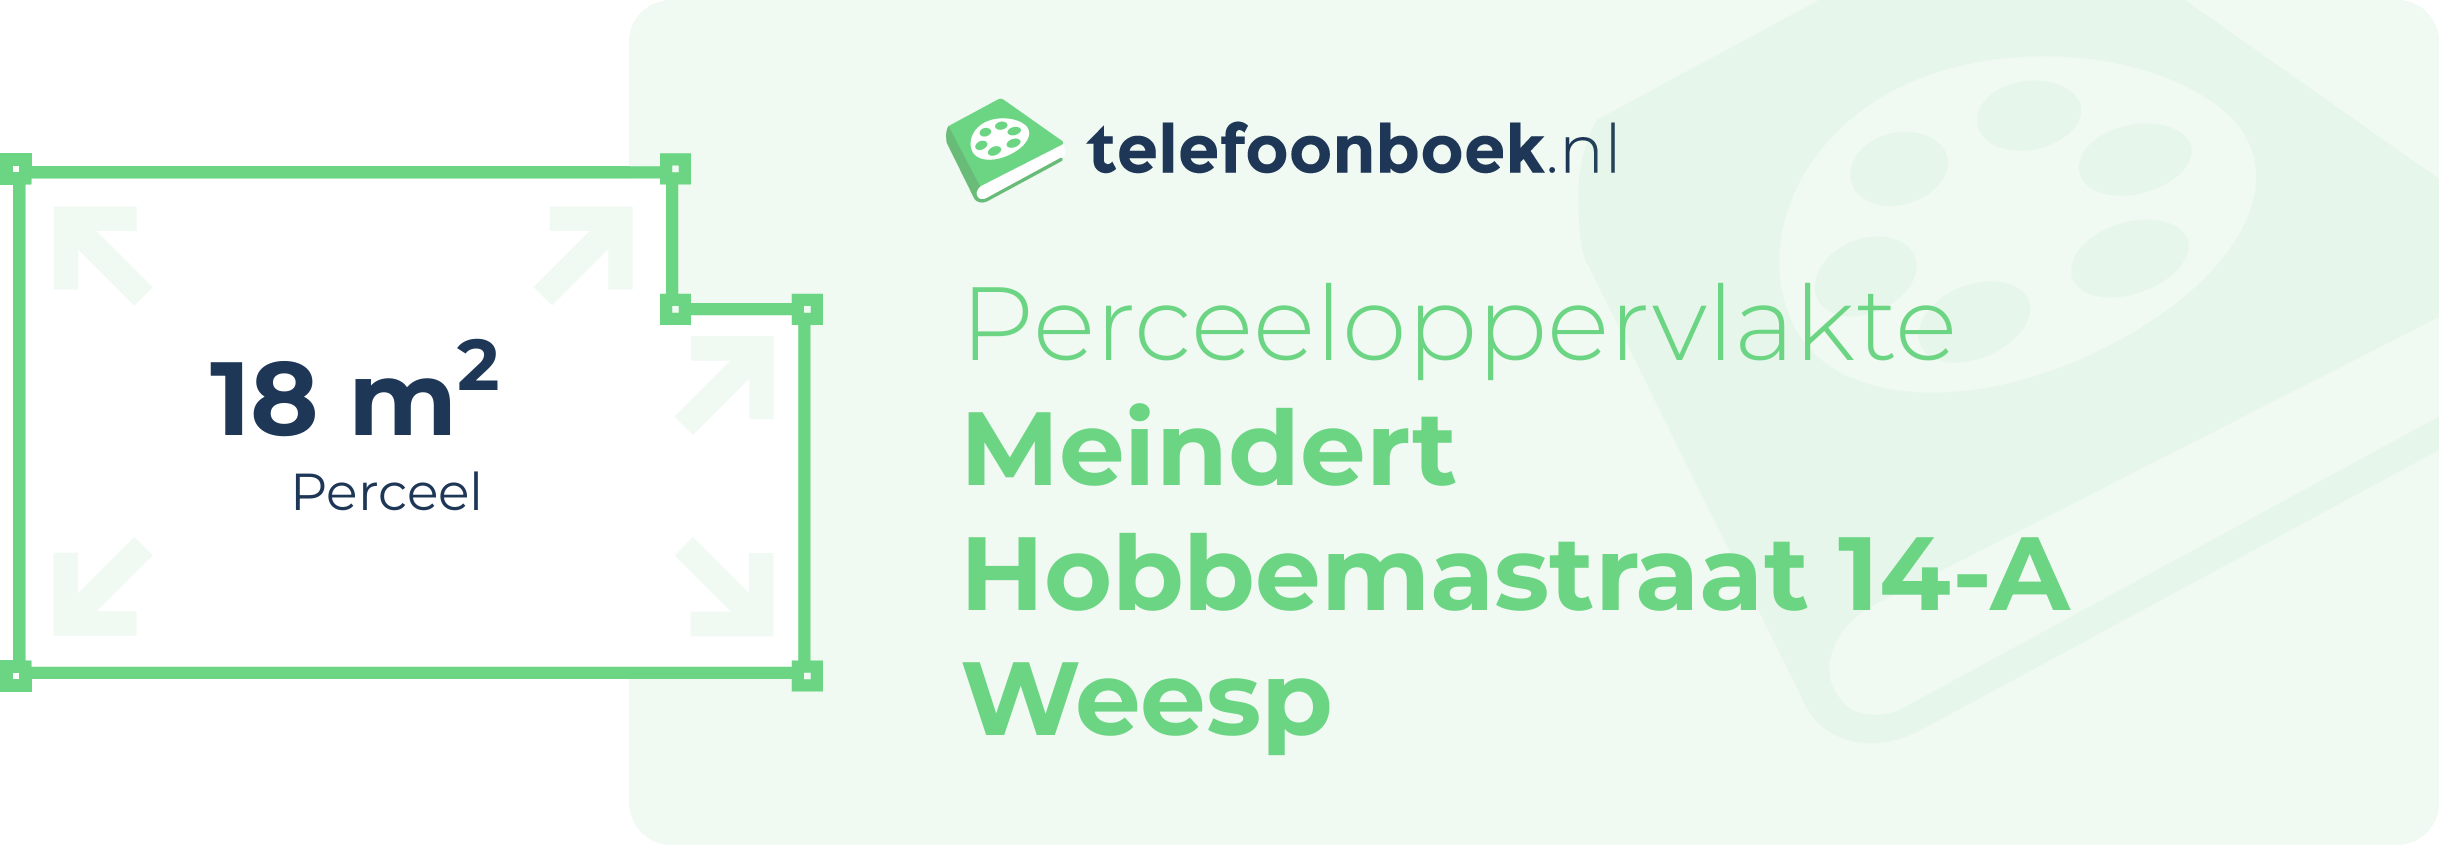 Perceeloppervlakte Meindert Hobbemastraat 14-A Weesp